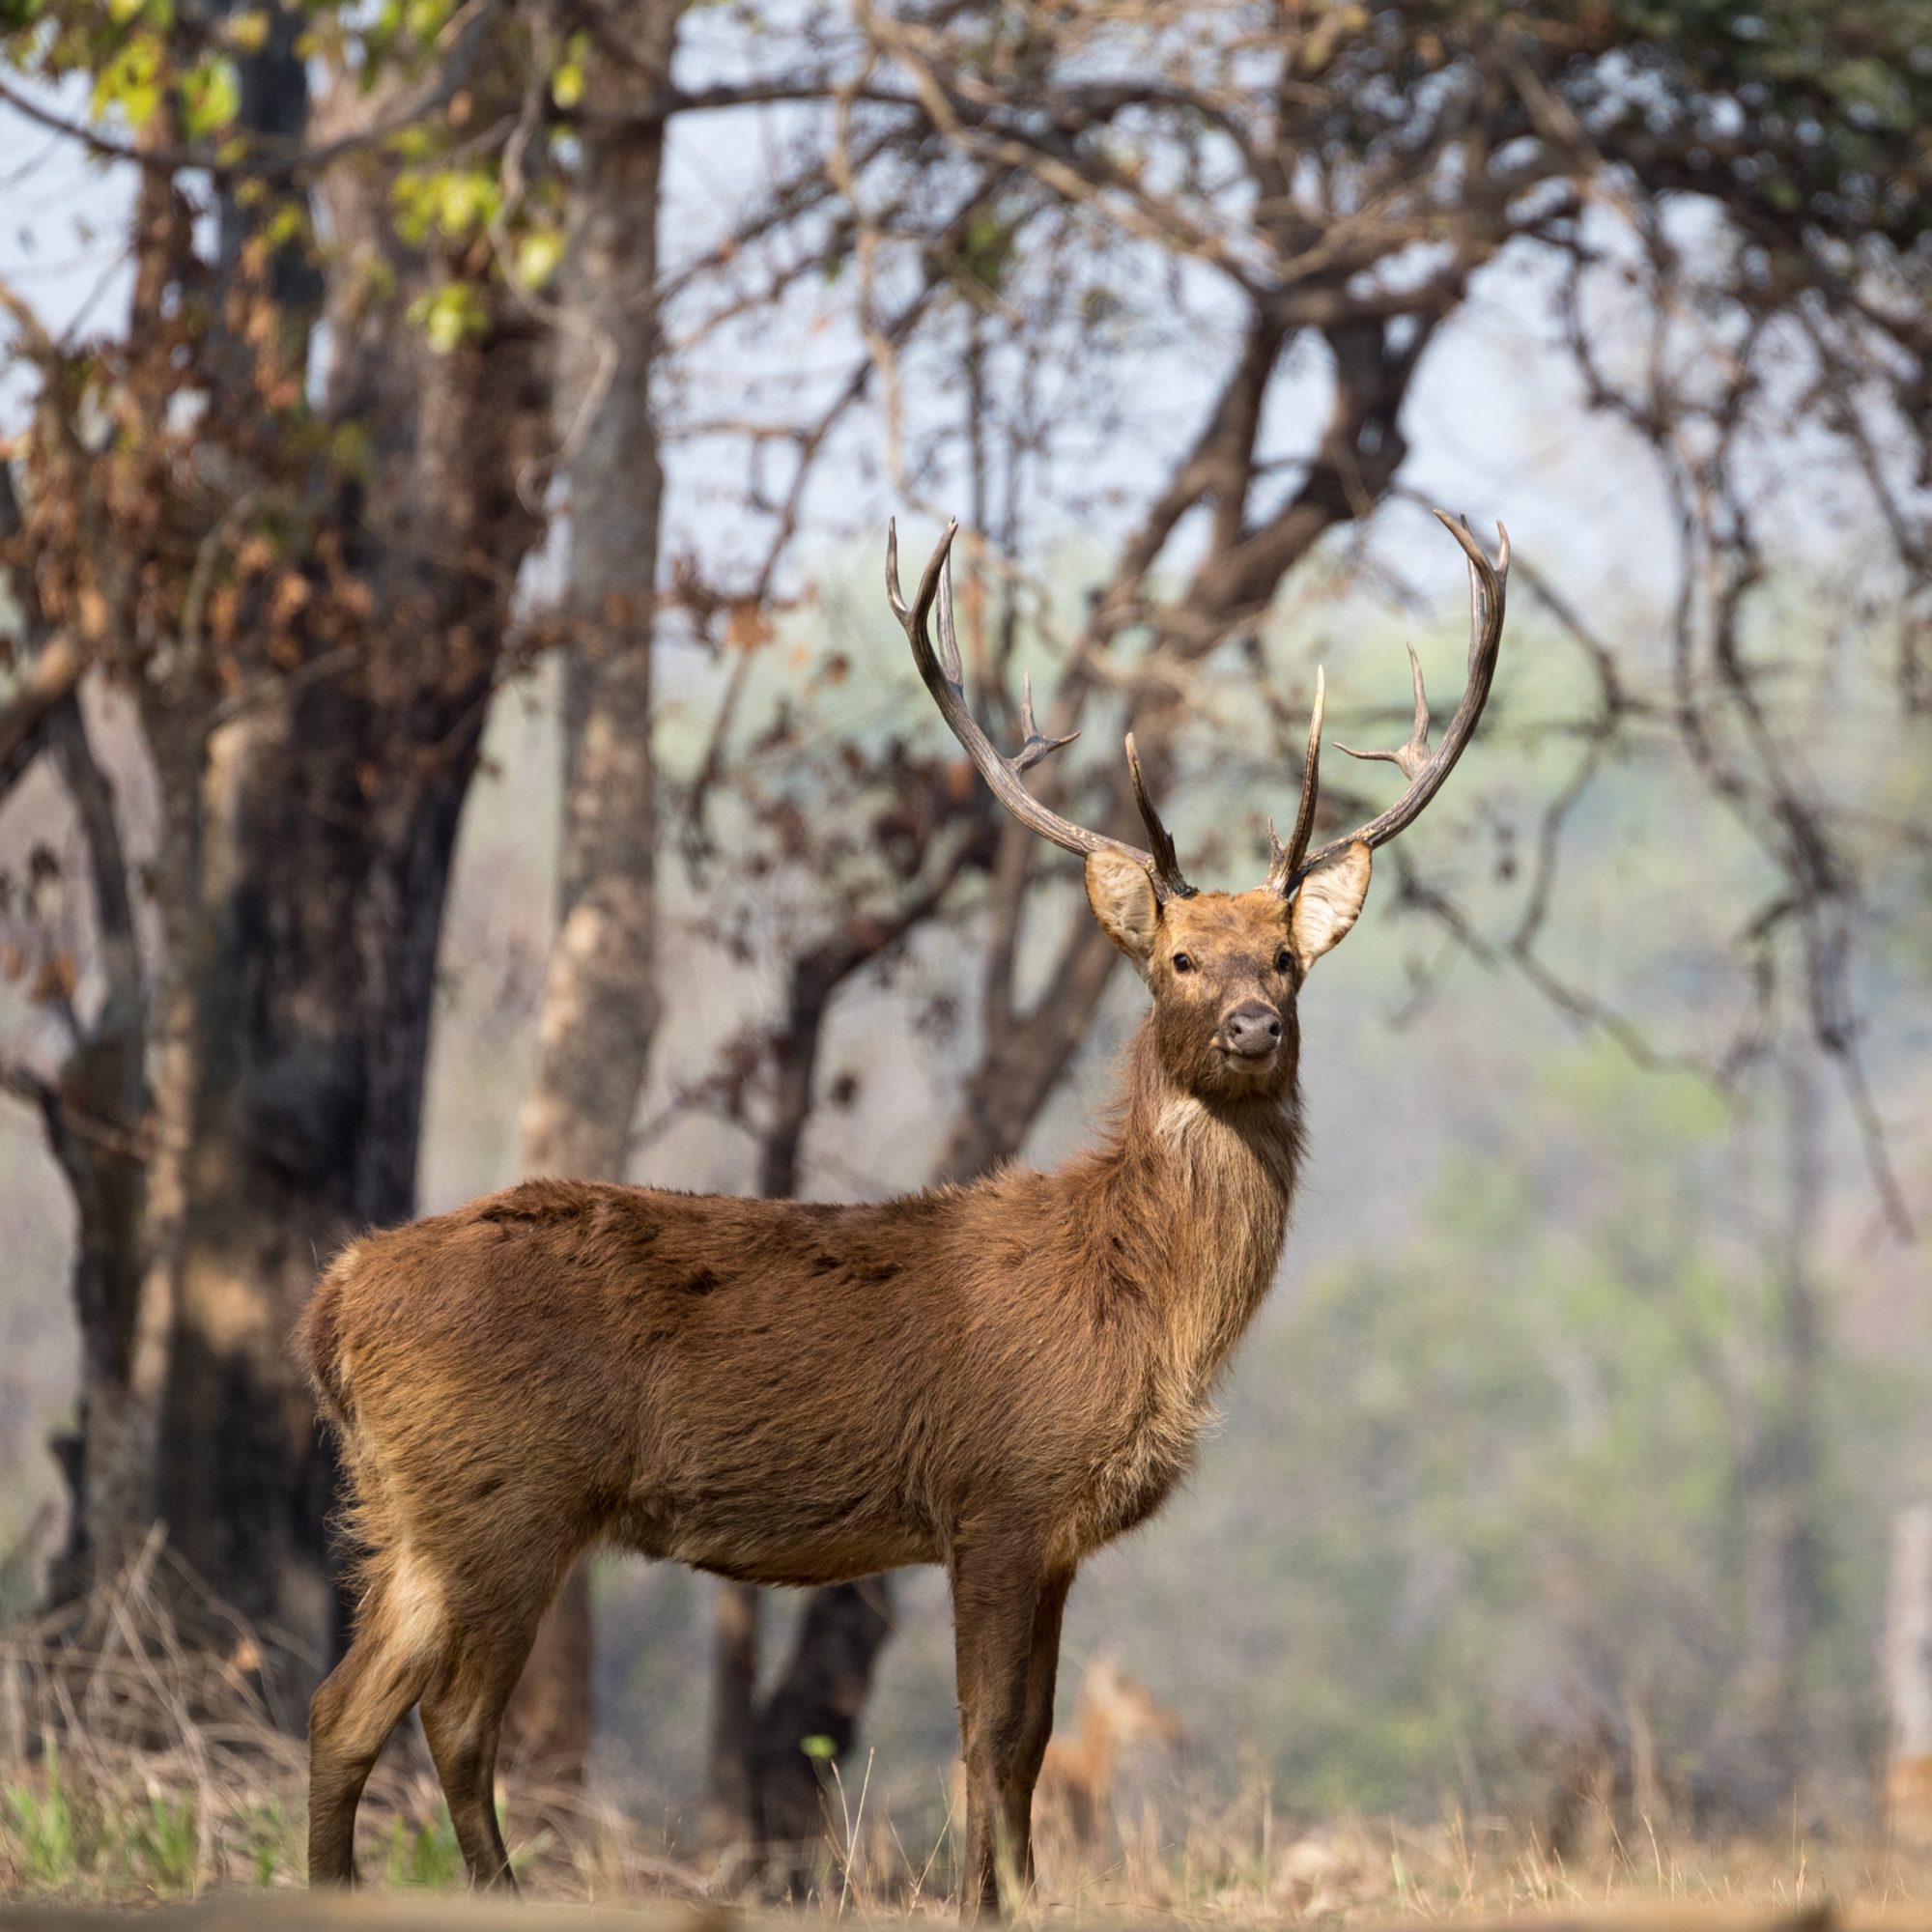 Spotted Deer and Sambar at a waterhole – Kanha, India 2018